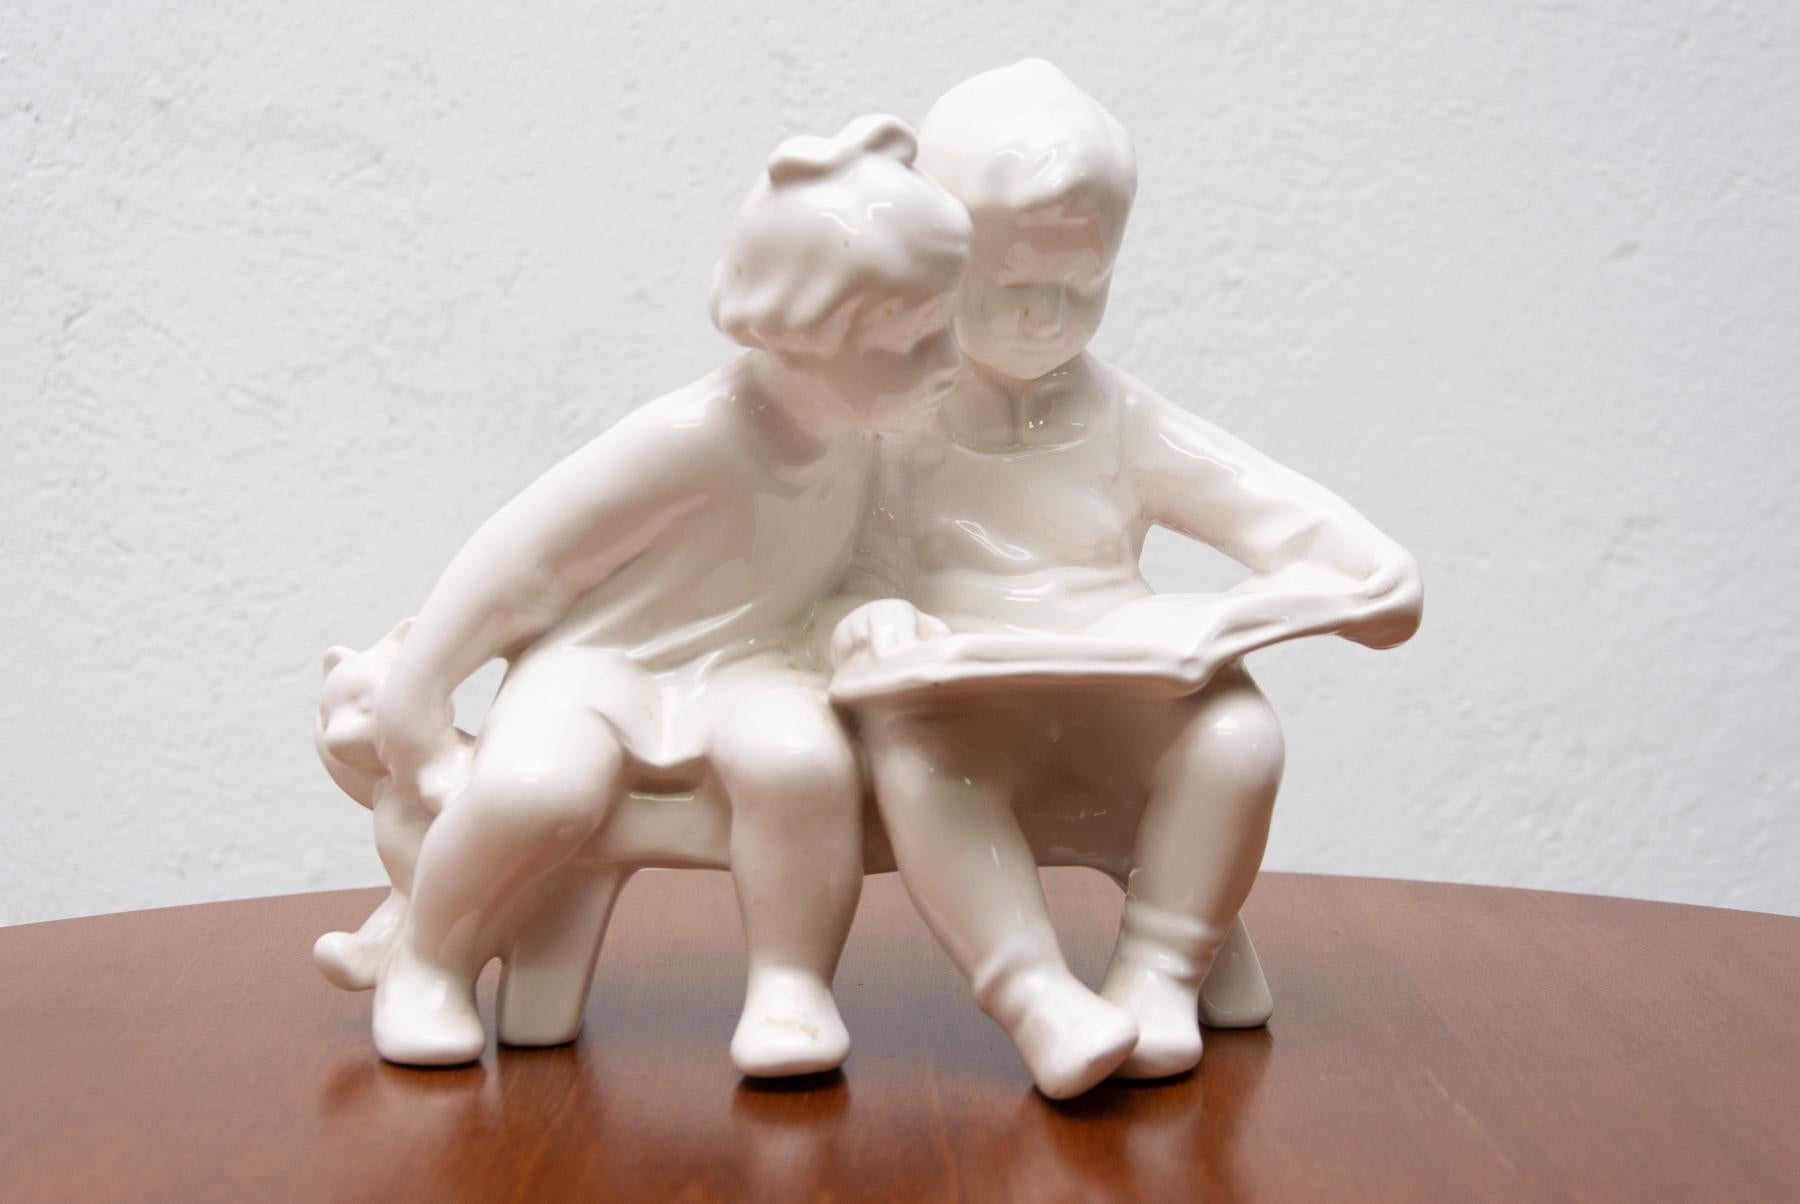 Sculpture en céramique d'enfants avec un livre, réalisée par la société Keramia Znojmo dans l'ancienne Tchécoslovaquie dans les années 1950. La sculpture est réalisée en céramique.
La statuette est en très bon état vintage.